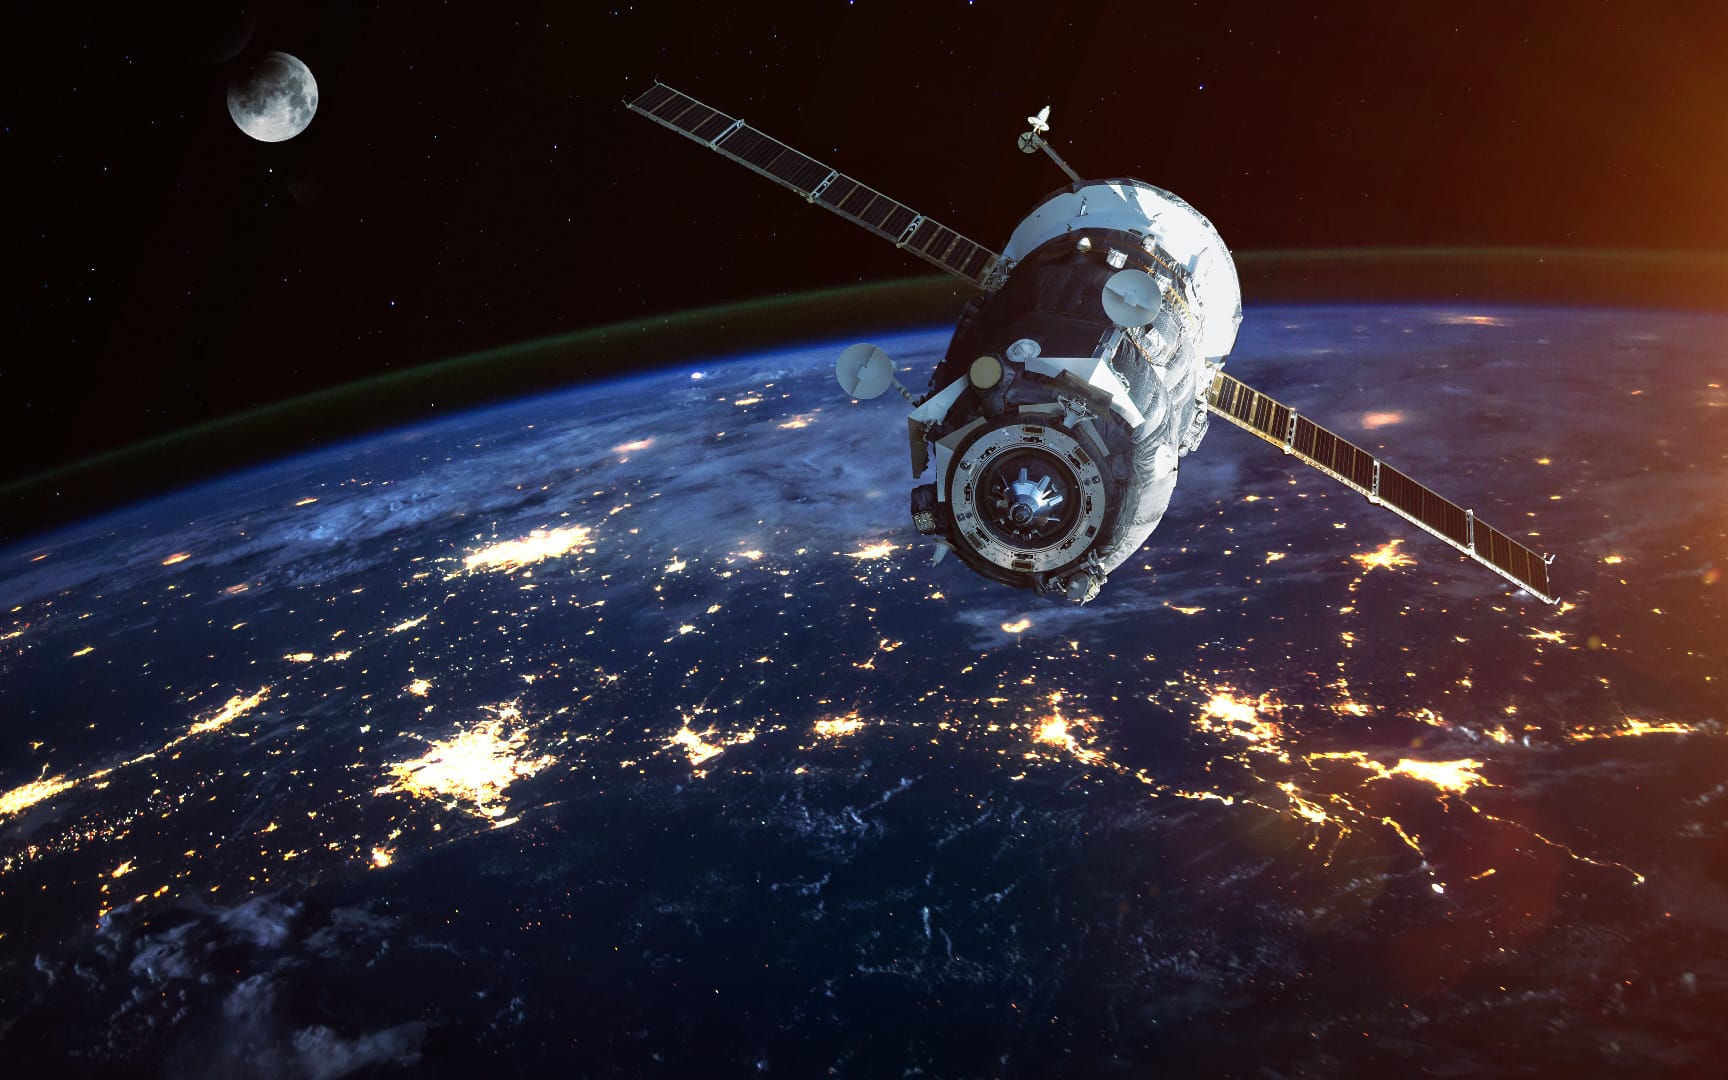 Российские спутники «Бюро 1440» передали данные в открытом космосе со скоростью 10 Гбит/с